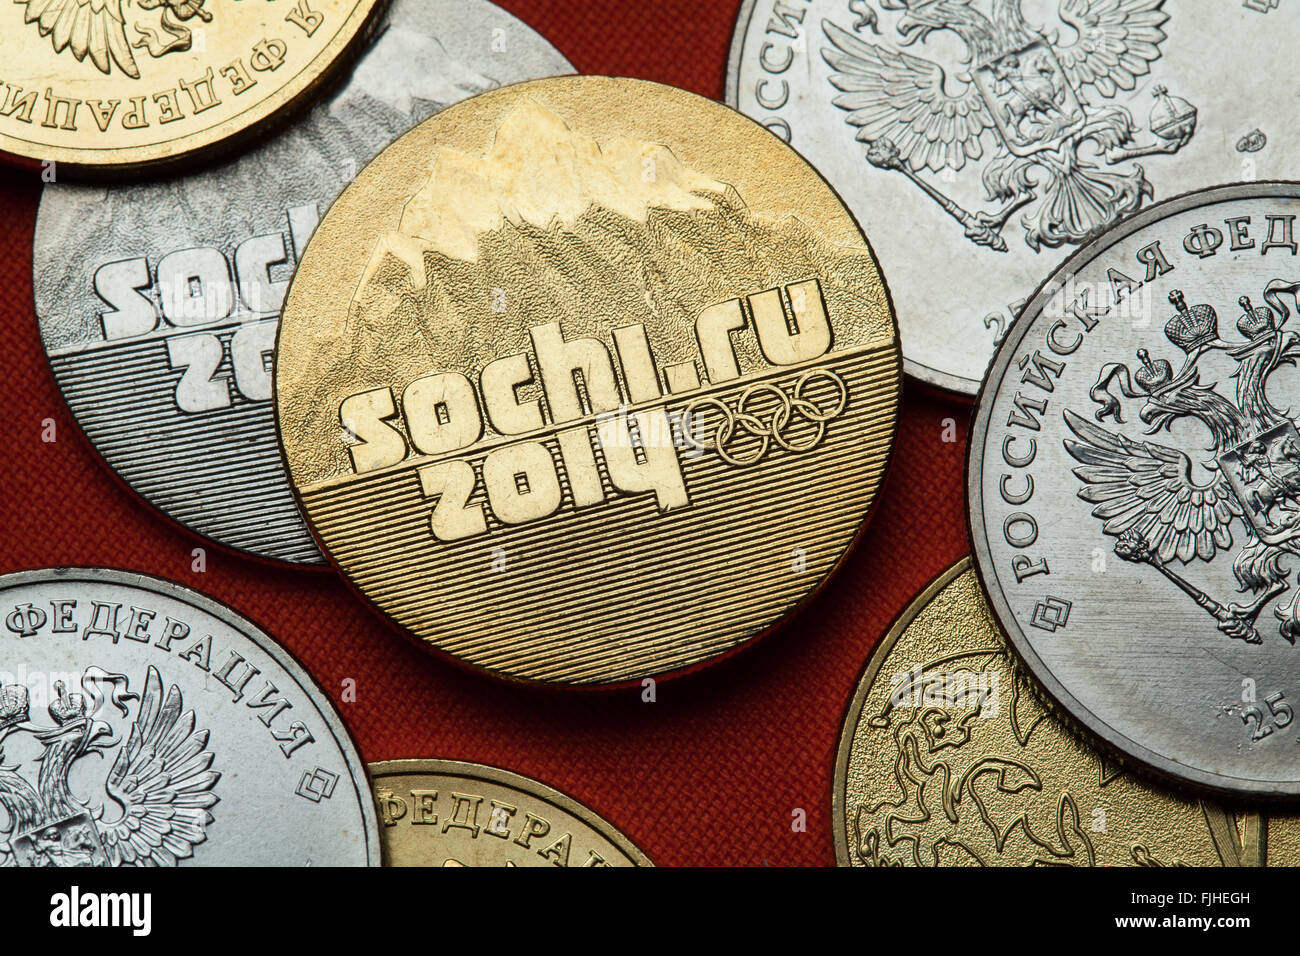 Münzen aus Russland. Logo für die Sotschi 2014 Olympischen Winterspiele in Russland 25 Rubel-Gedenkmünze dargestellt. Stockfoto